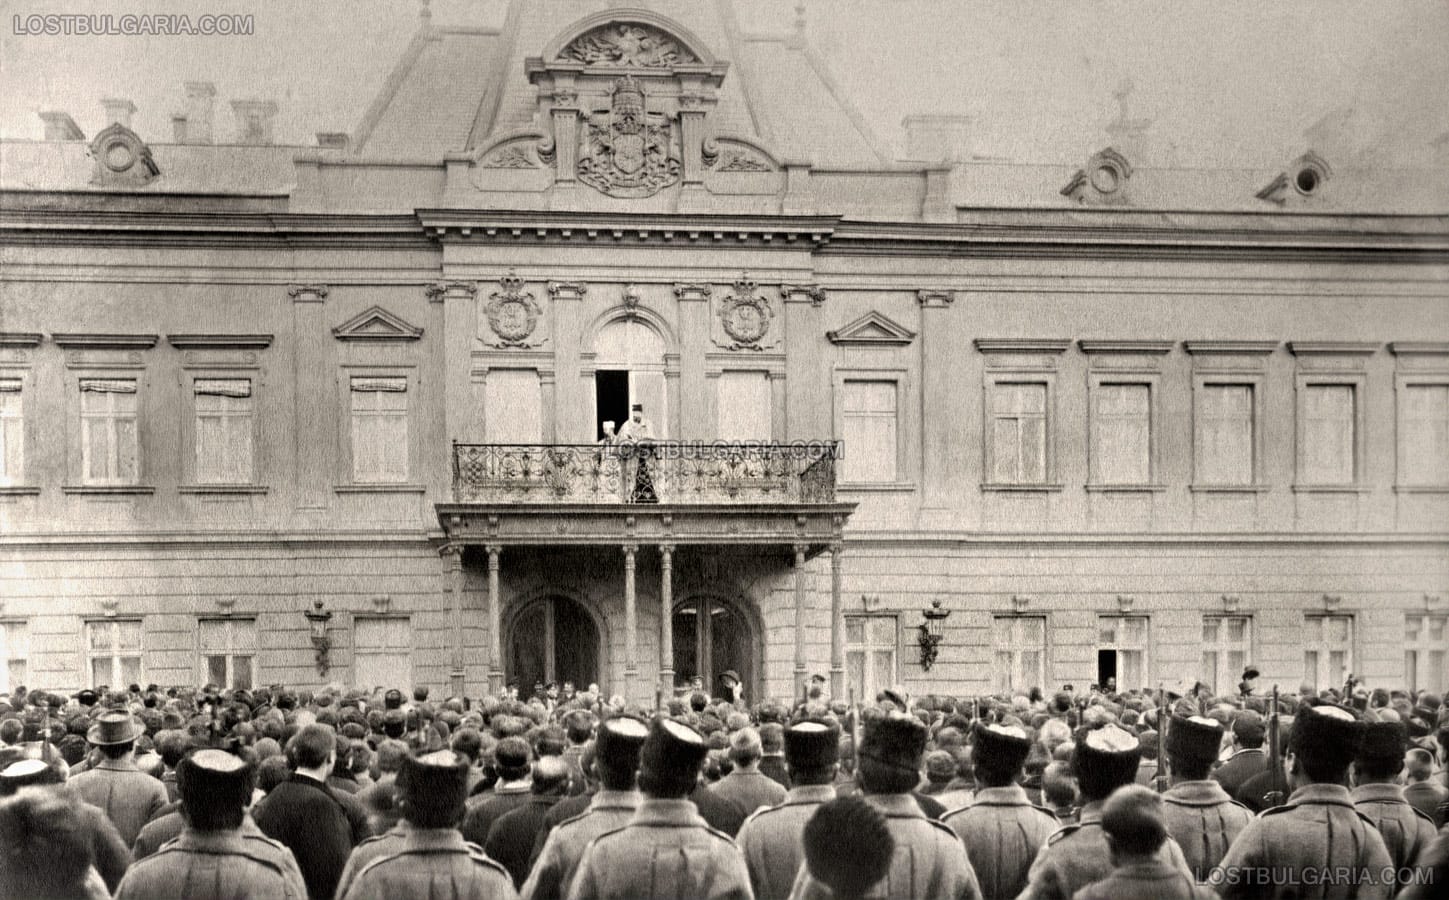 Княз Фердинанд приема поздрави от балкона на Двореца в София по повод раждането на сина си - престолонаследника Княз Борис Търновски, 18 януари (стар стил) 1894 г.